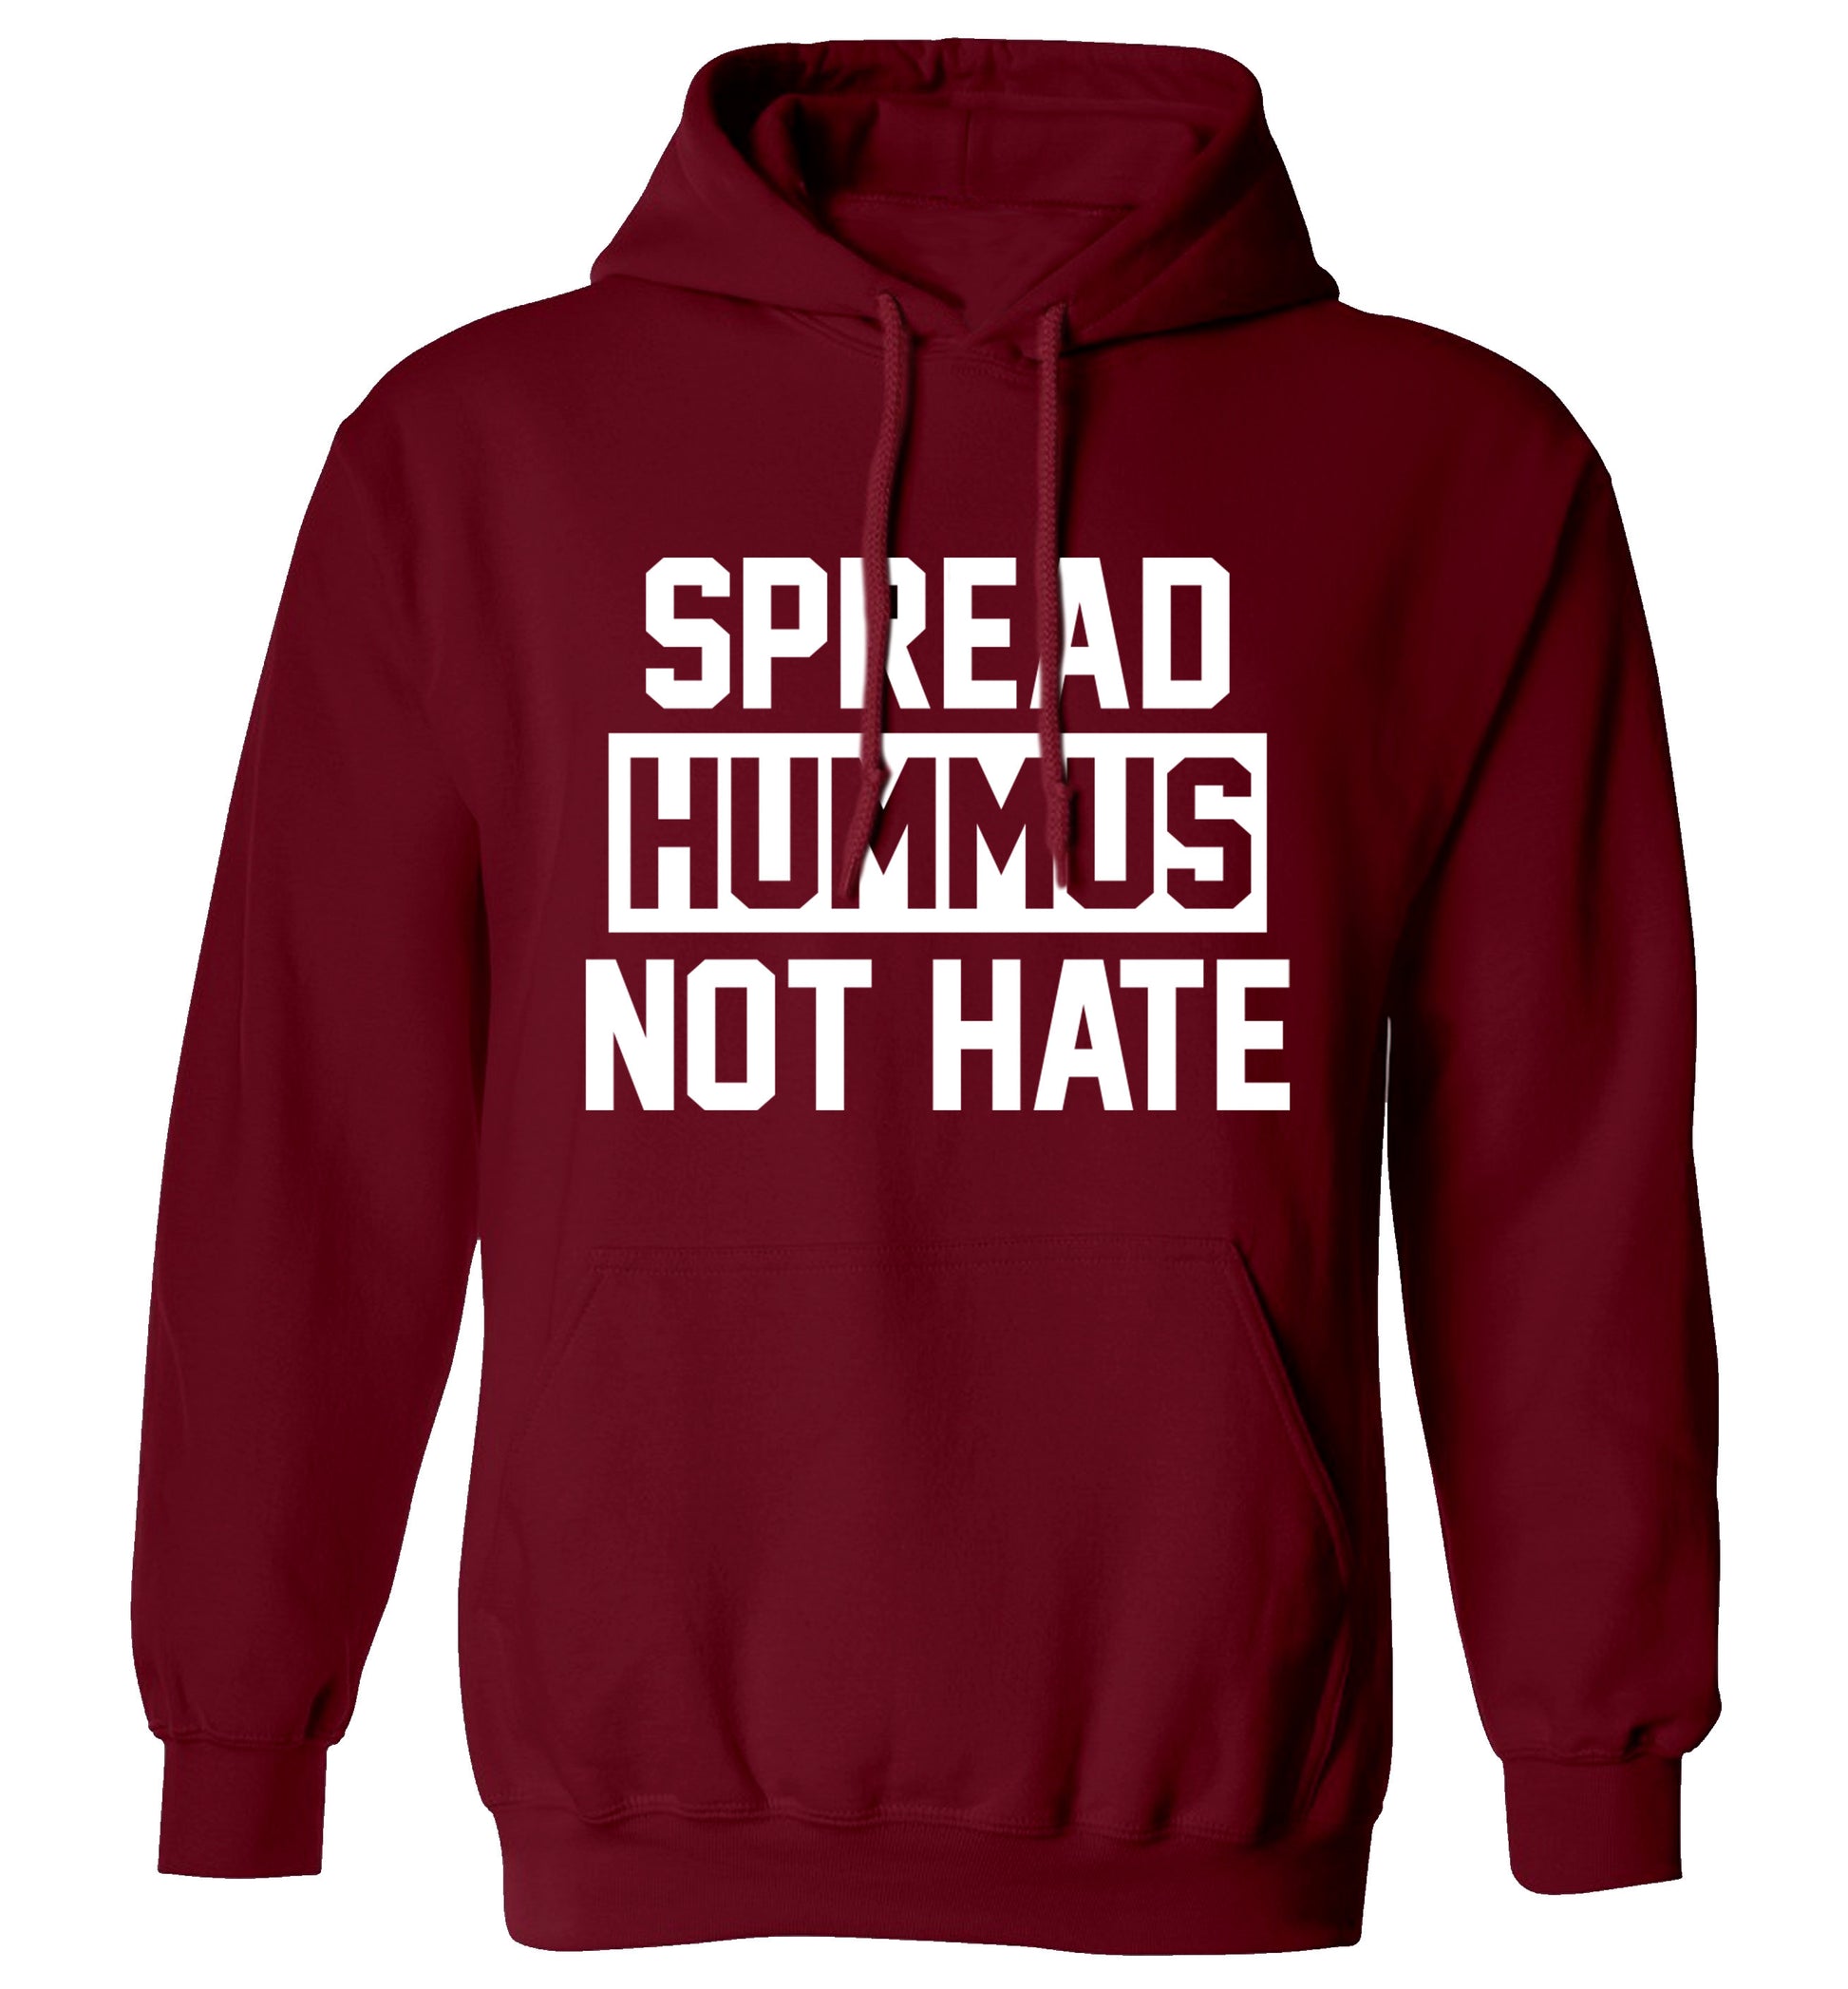 Spread hummus not hate adults unisex maroon hoodie 2XL